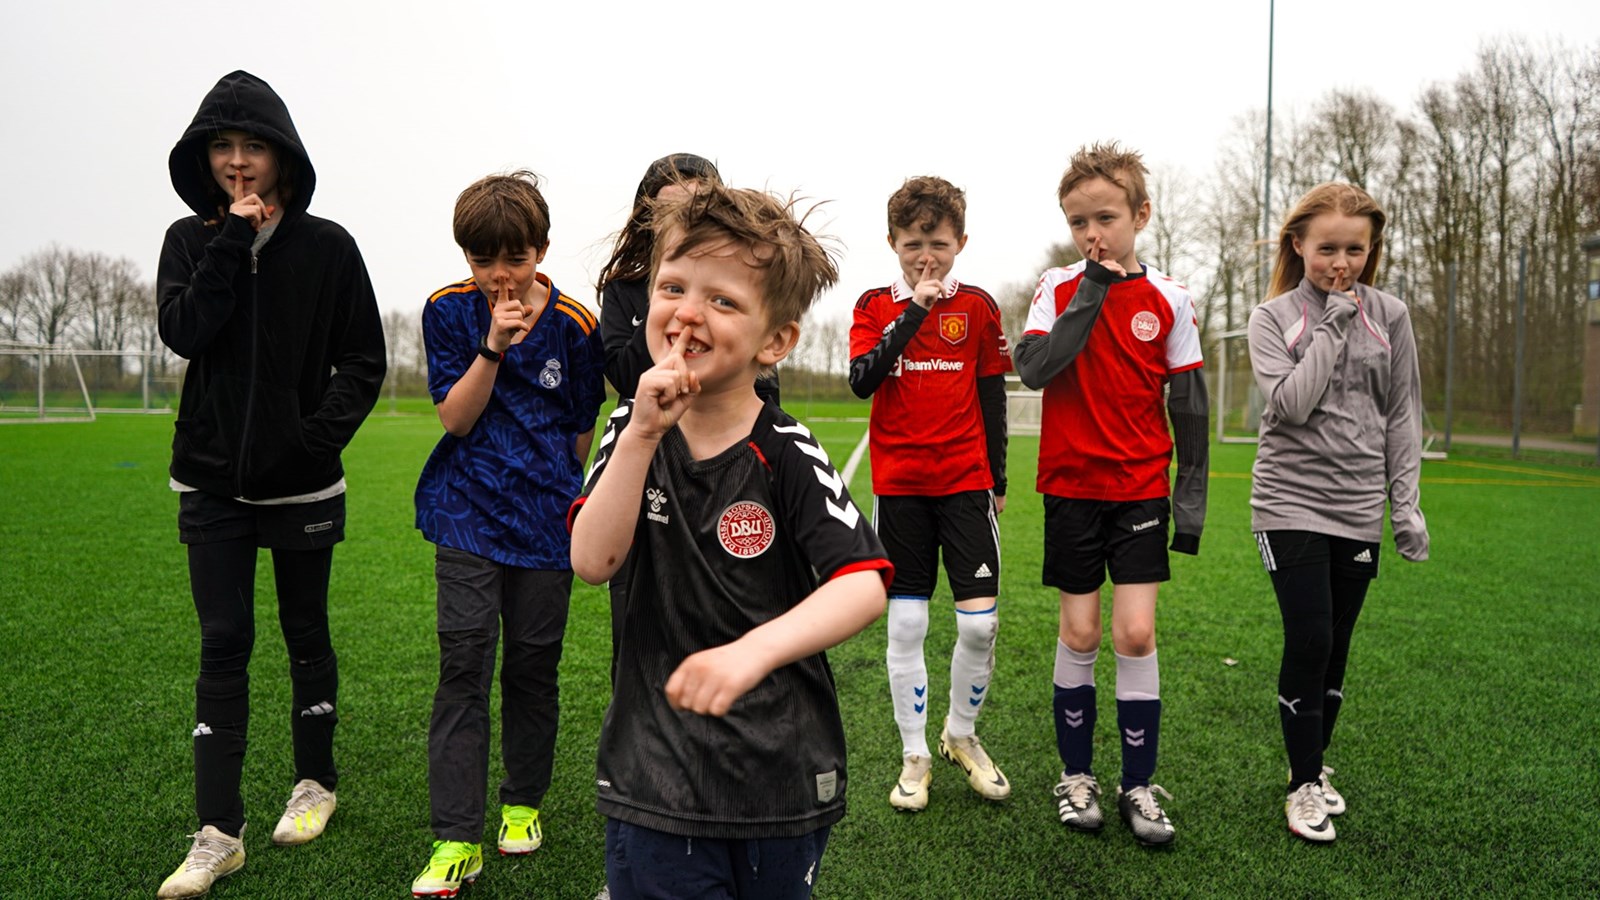 Børnefodbold: I uge 18 skruer vi ned for tilråbene